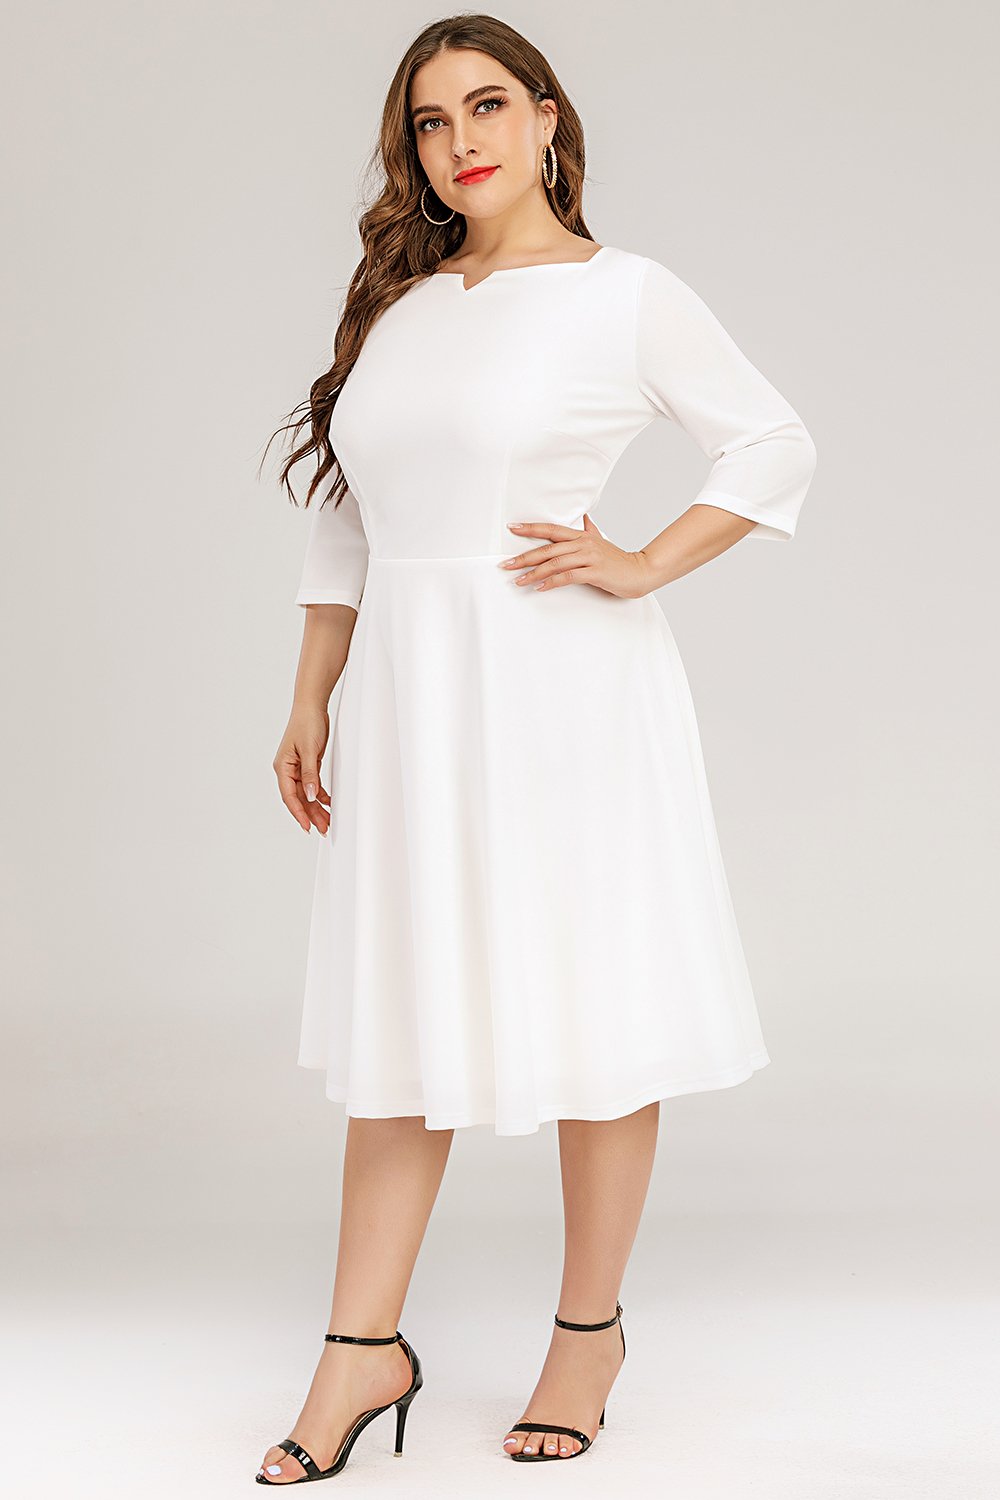 Vestido formal branco plus size